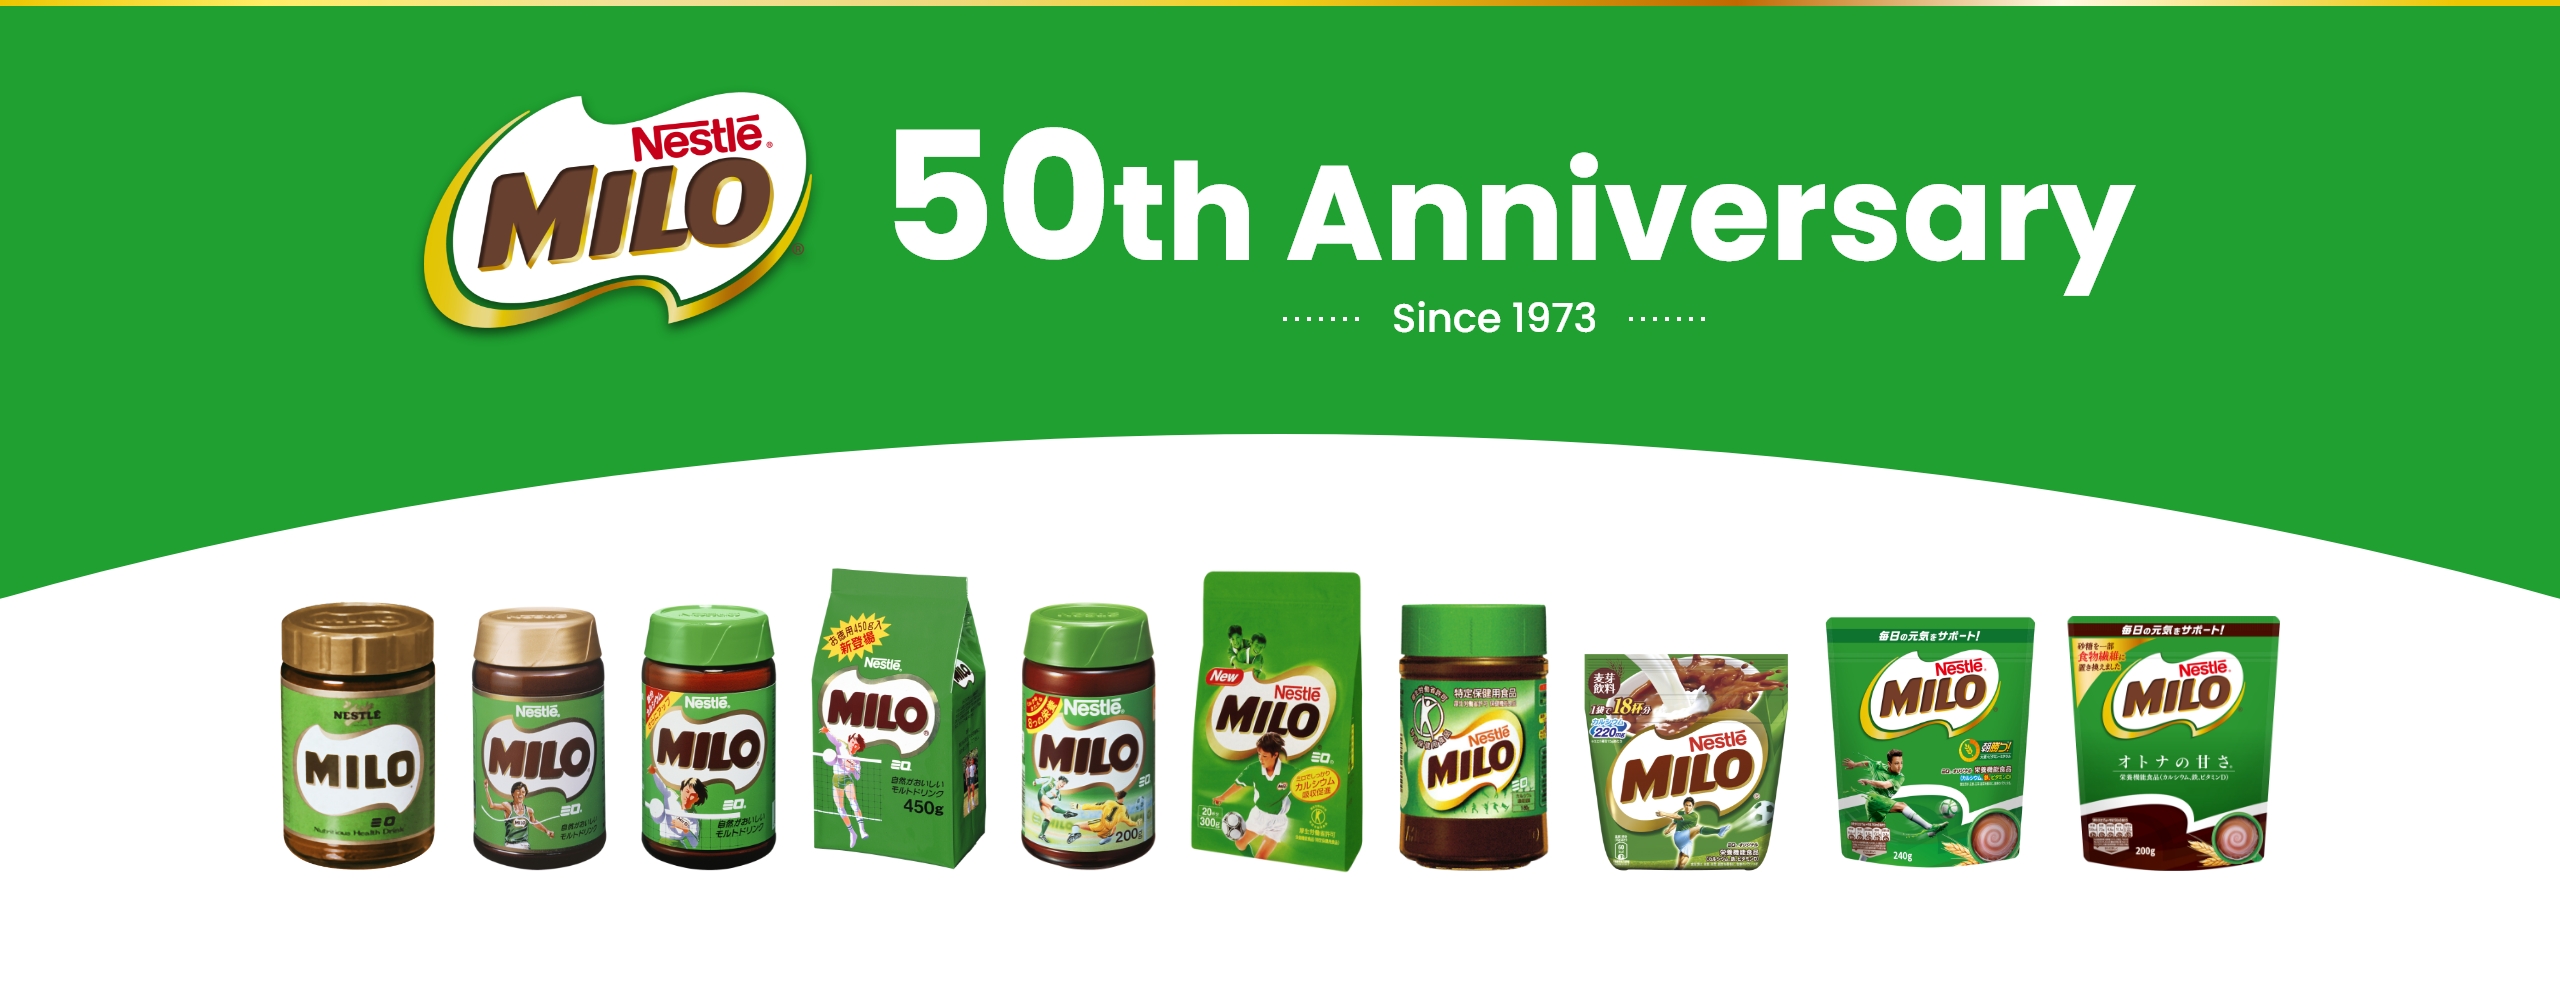 ネスレ ミロ 50th Anniversary - since 1973